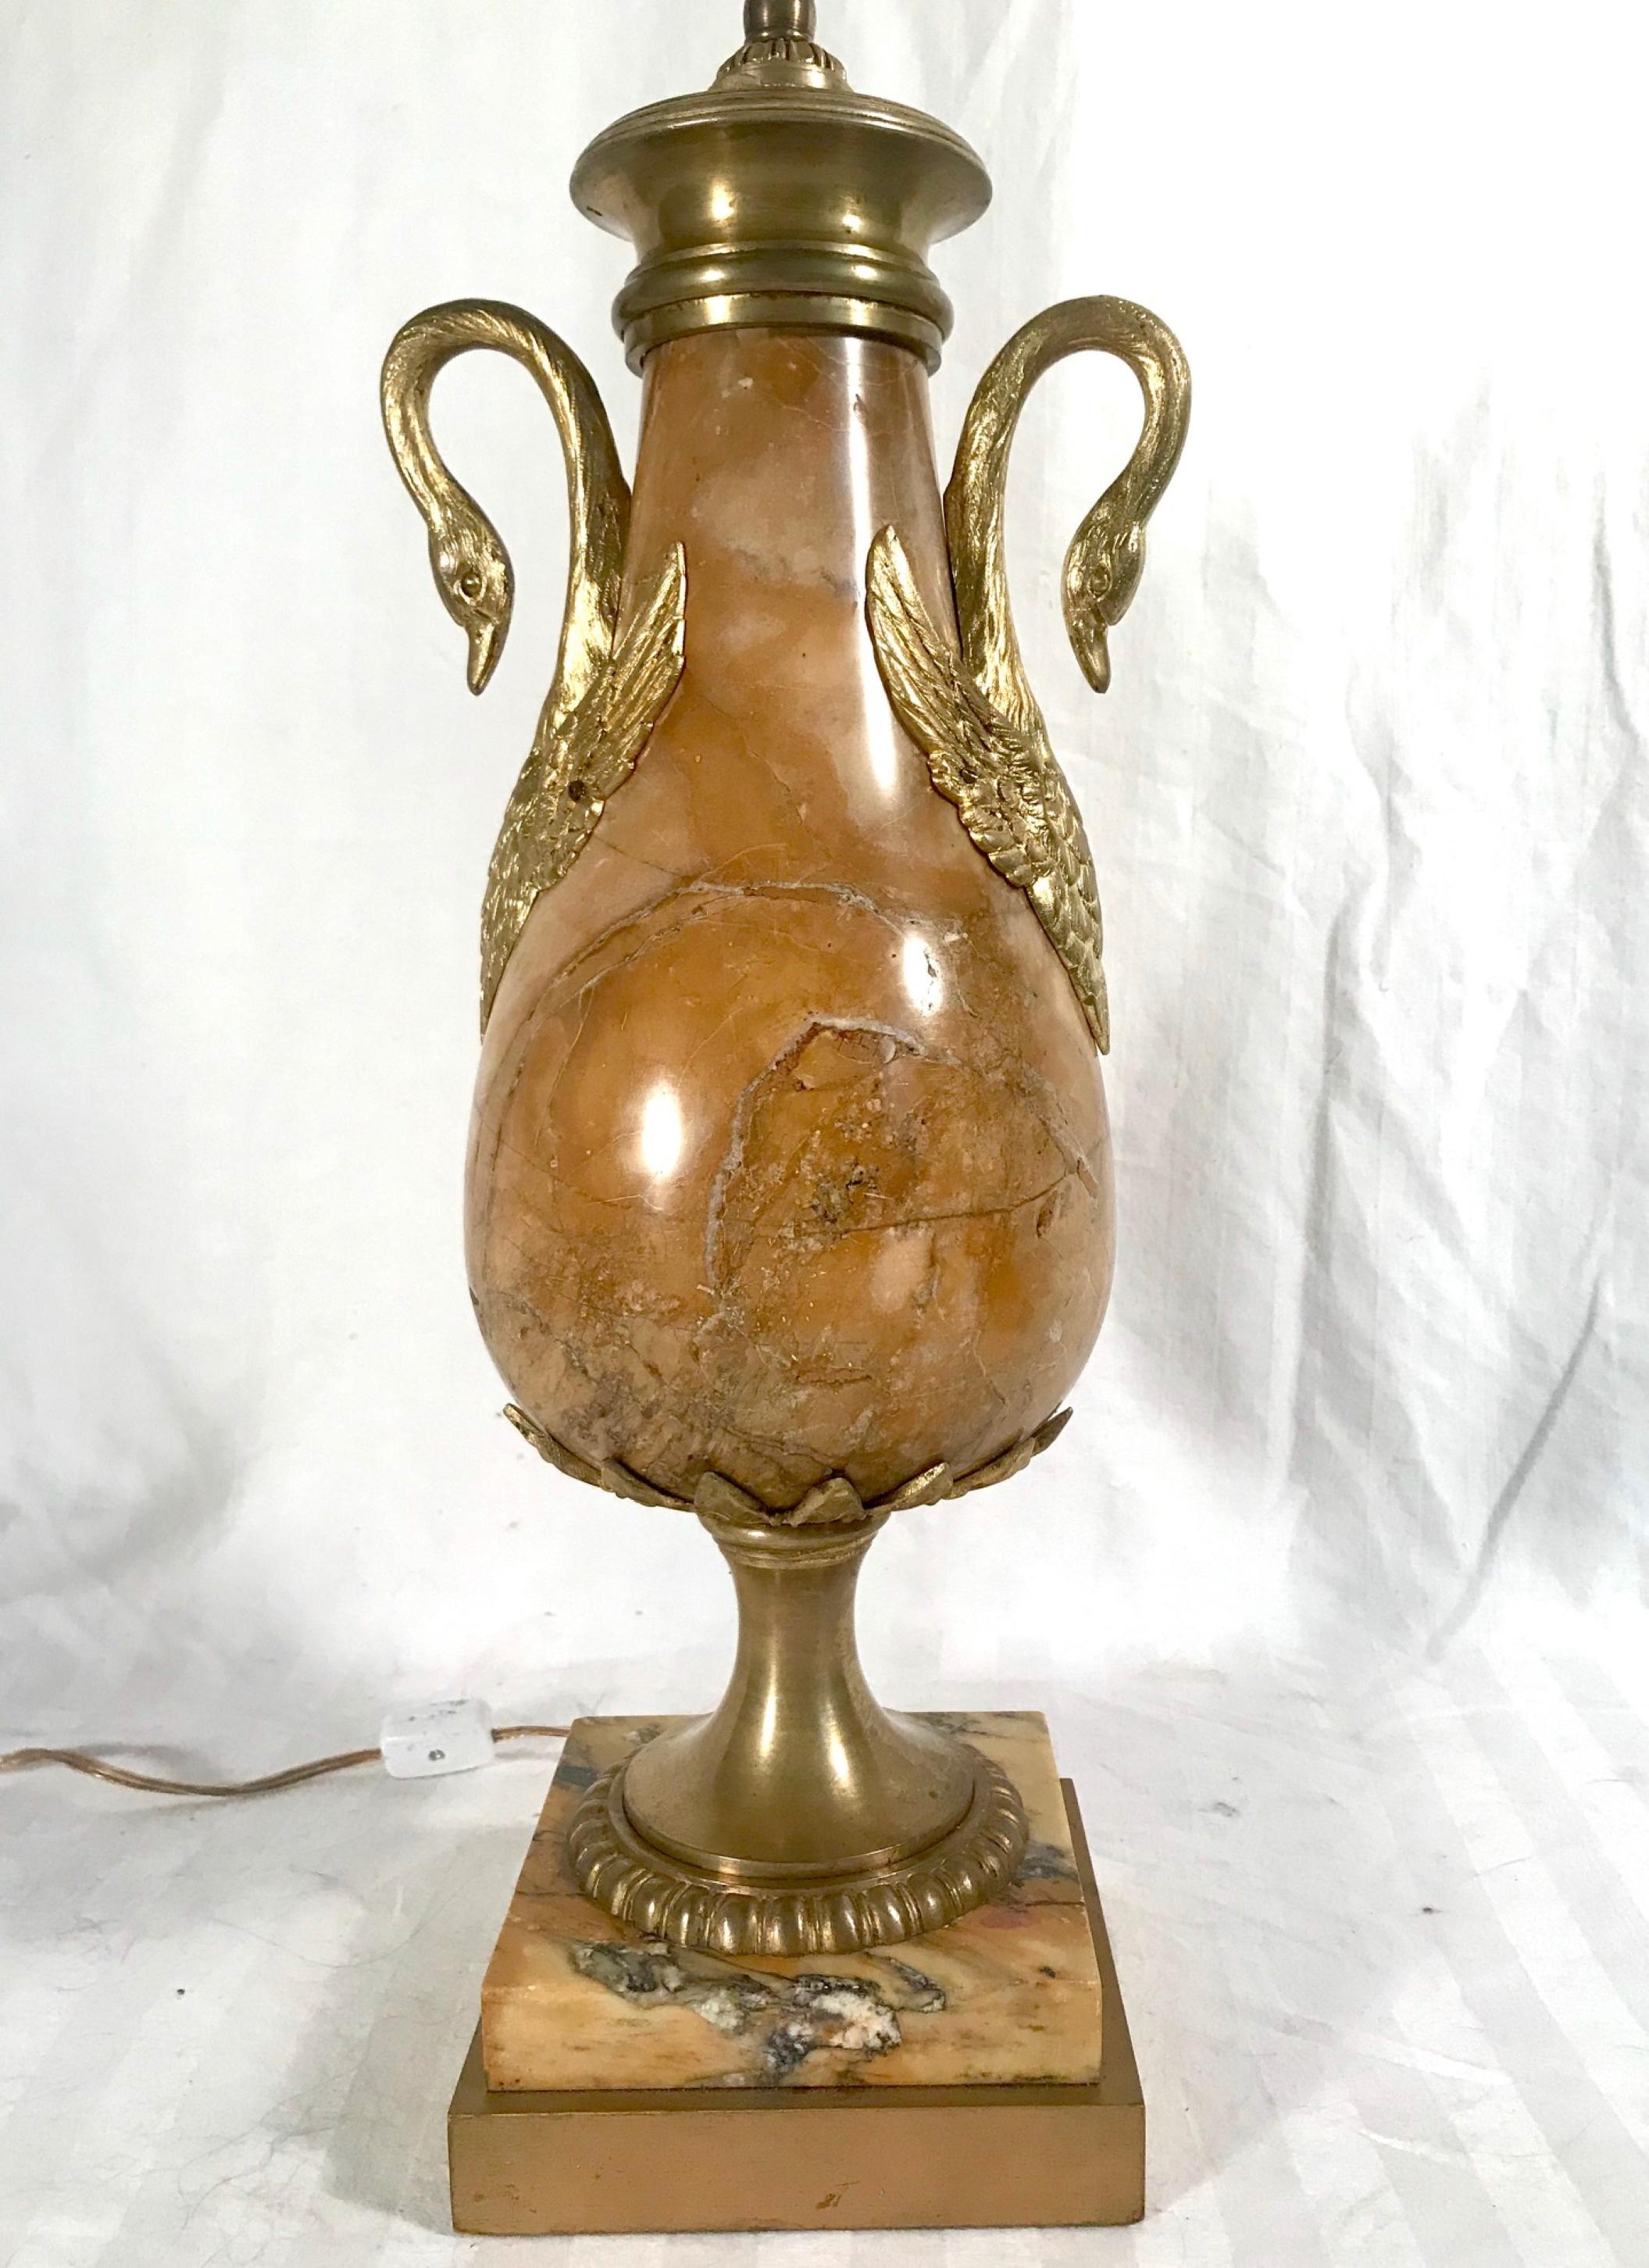 Antike französische Urne im Louis-XVI-Stil aus Siena-Marmor und Ormolu

Elegante Urne aus Siena-Marmor und Ormolu aus dem 19. Jahrhundert, umgewandelt in eine Tischlampe. Die balusterförmige Urne ist mit anmutigen Schwanengriffen aus Ormolu